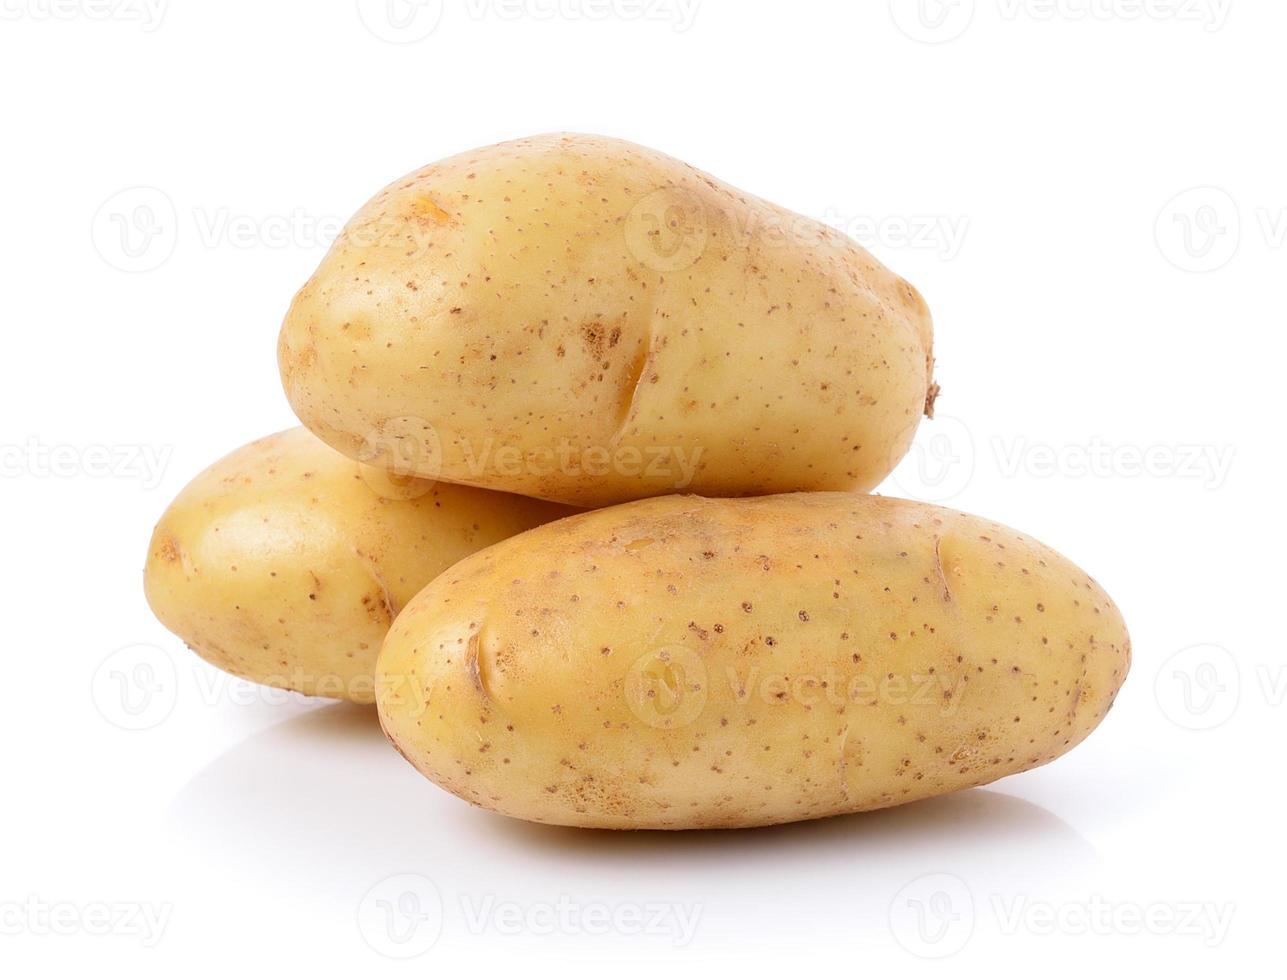 patata sobre fondo blanco foto